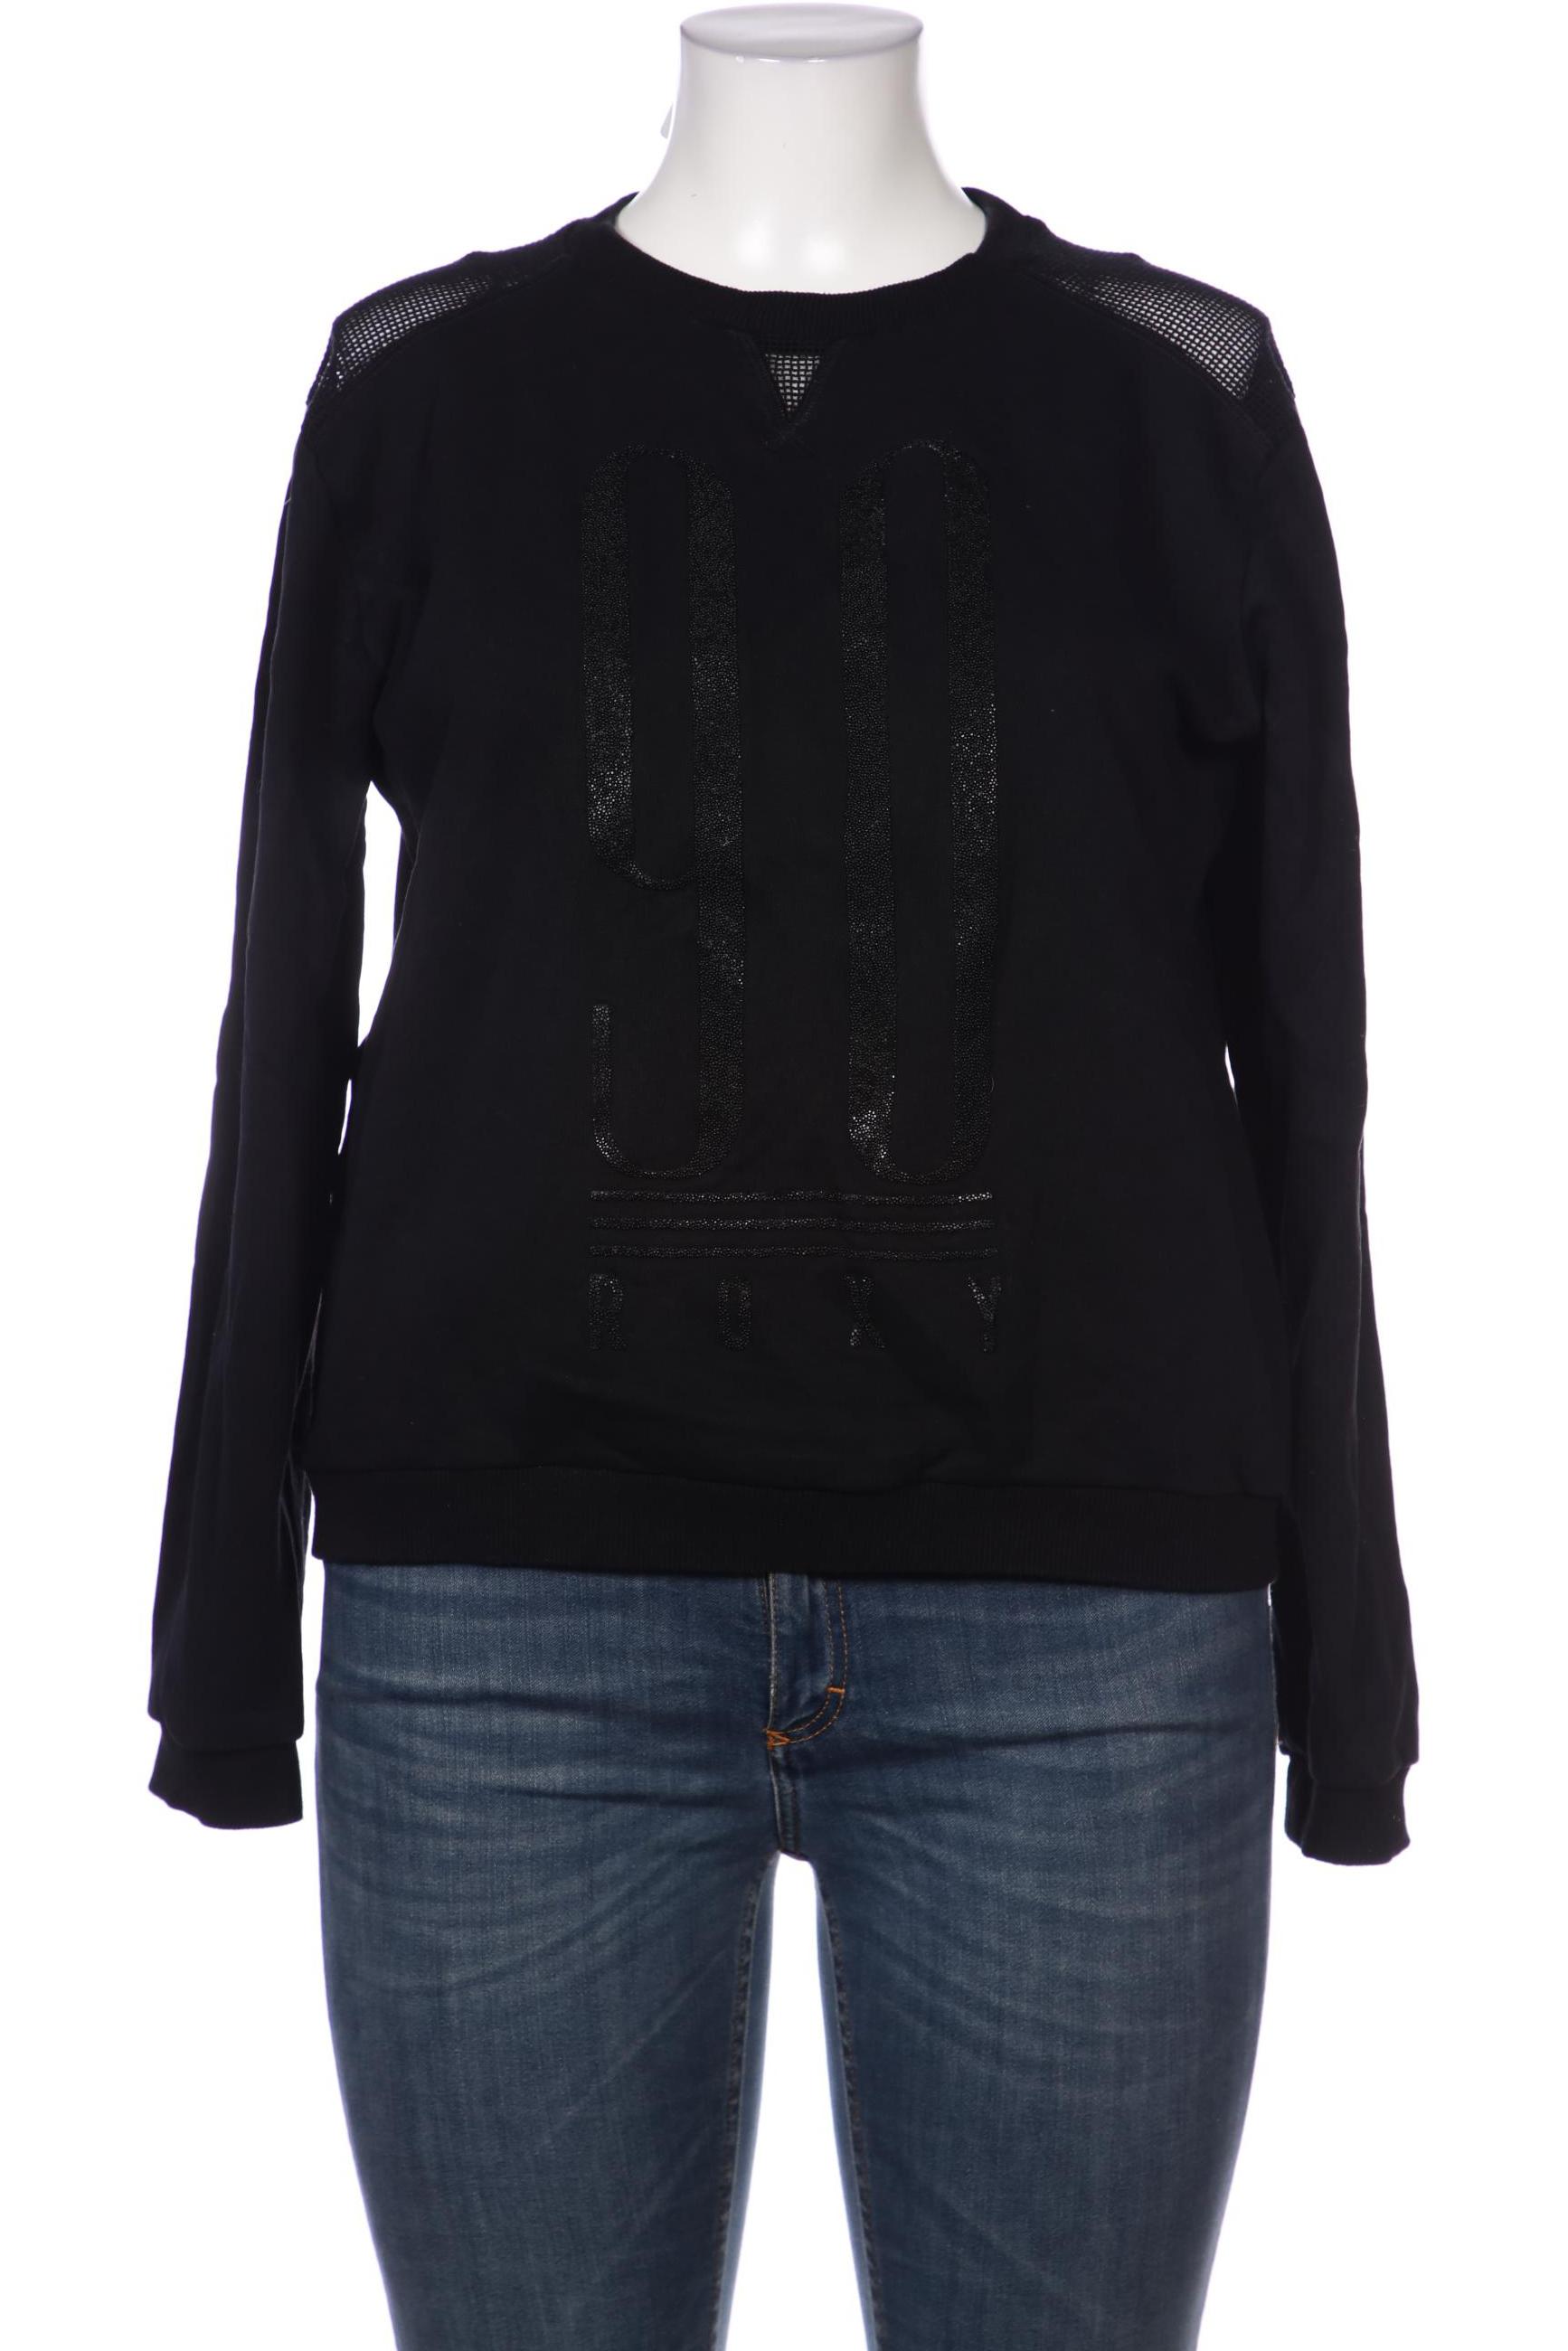 Roxy Damen Sweatshirt, schwarz von Roxy